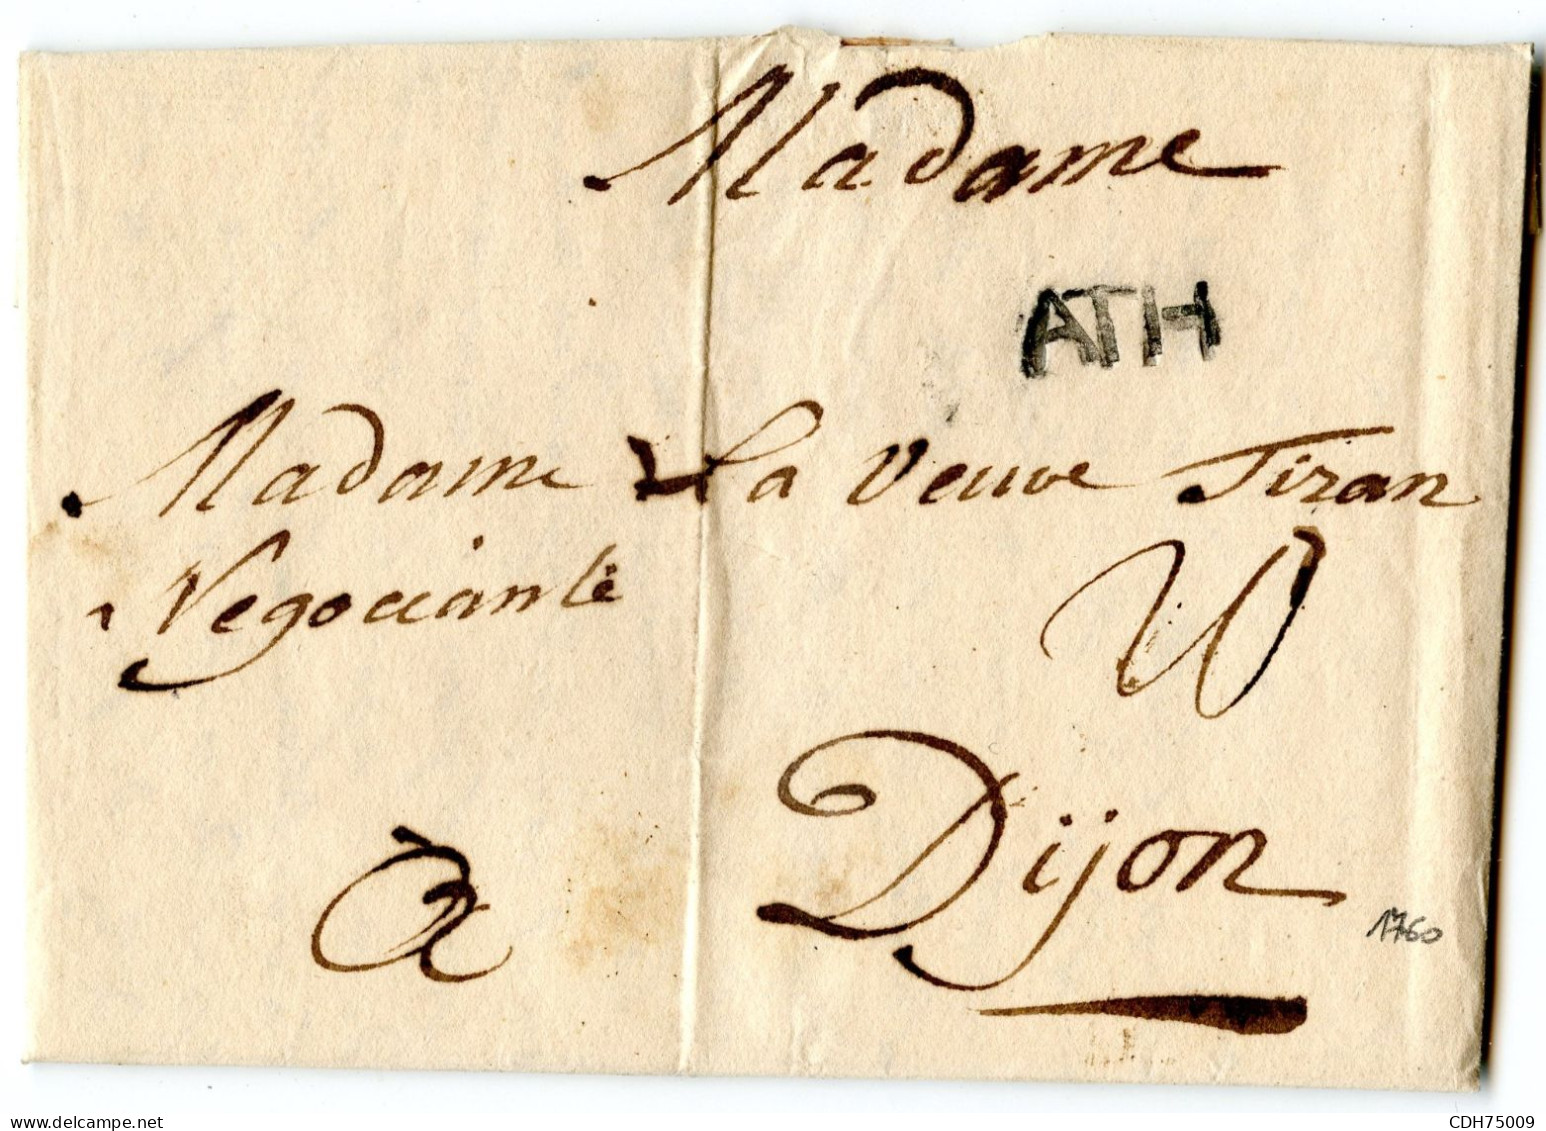 BELGIQUE - ATH - 1760 PERIODE DE LA GUERRE DE 7 ANS - 1714-1794 (Paises Bajos Austriacos)